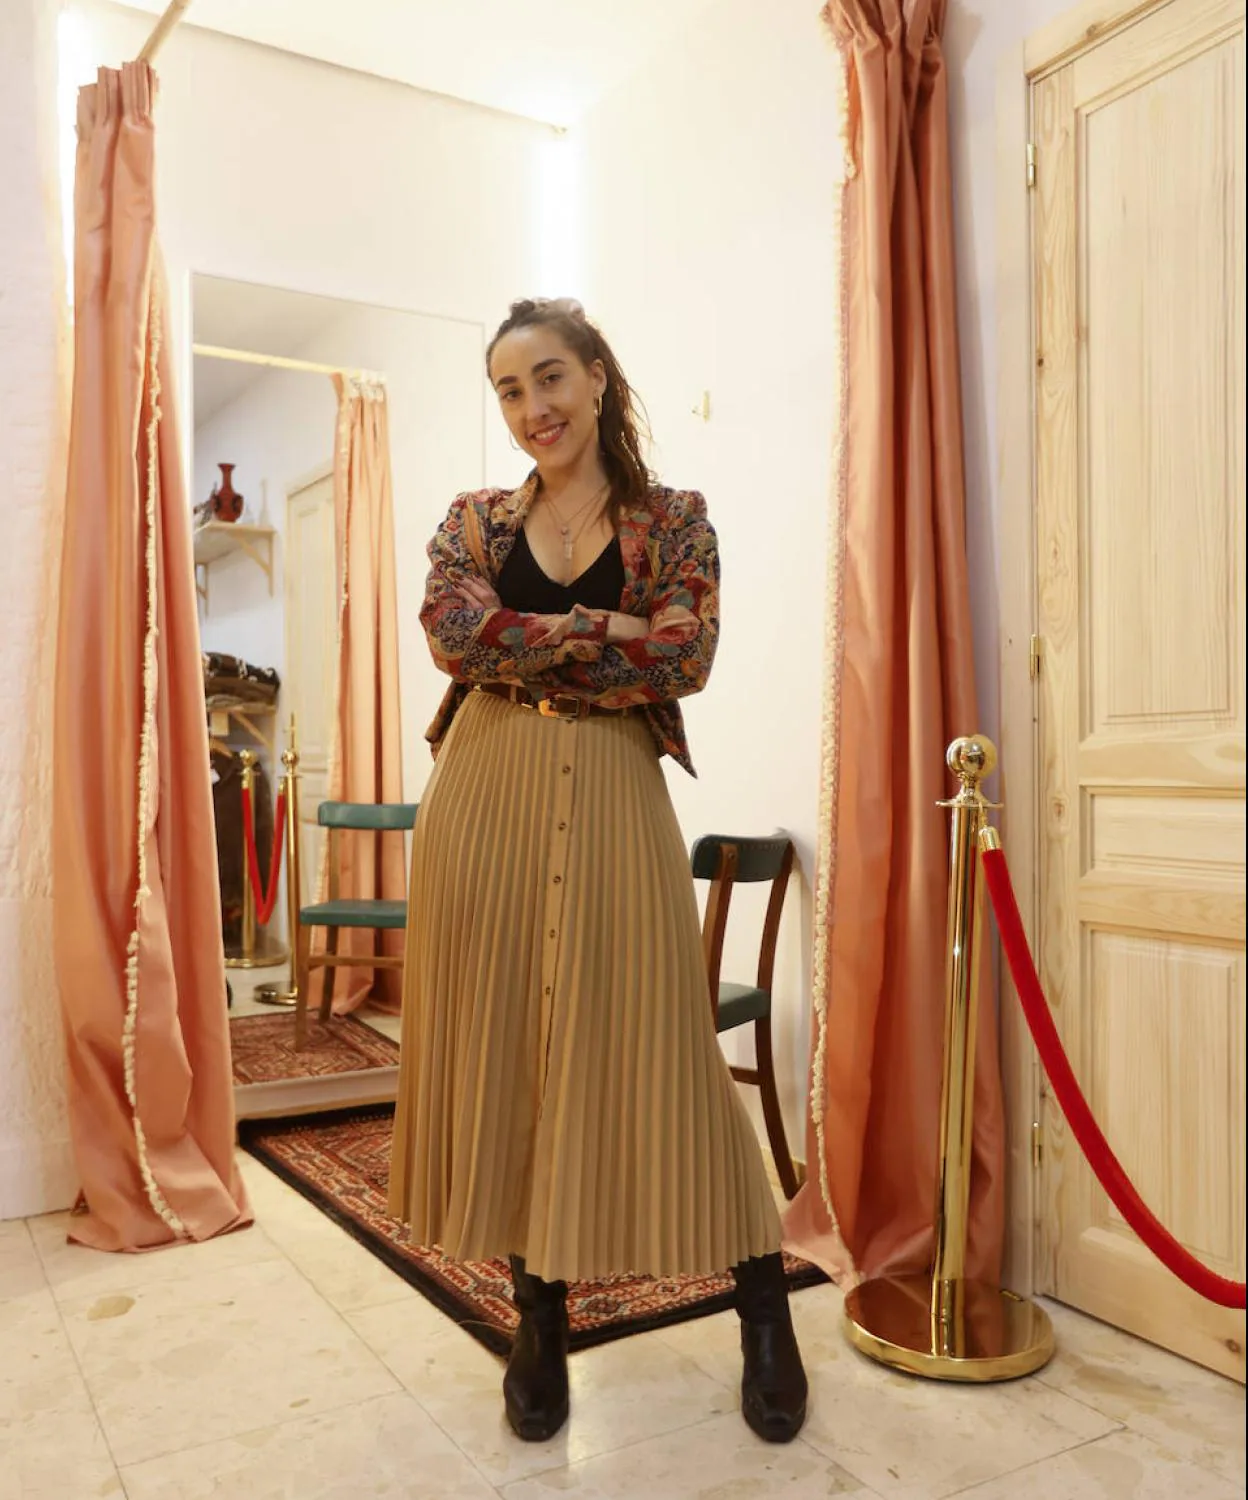 Progreso Chillido Inscribirse Tiendas en Bilbao (ropa 'vintage'): Mara, la joven creadora que abre su  segunda tienda de ropa 'vintage' en Bilbao | El Correo